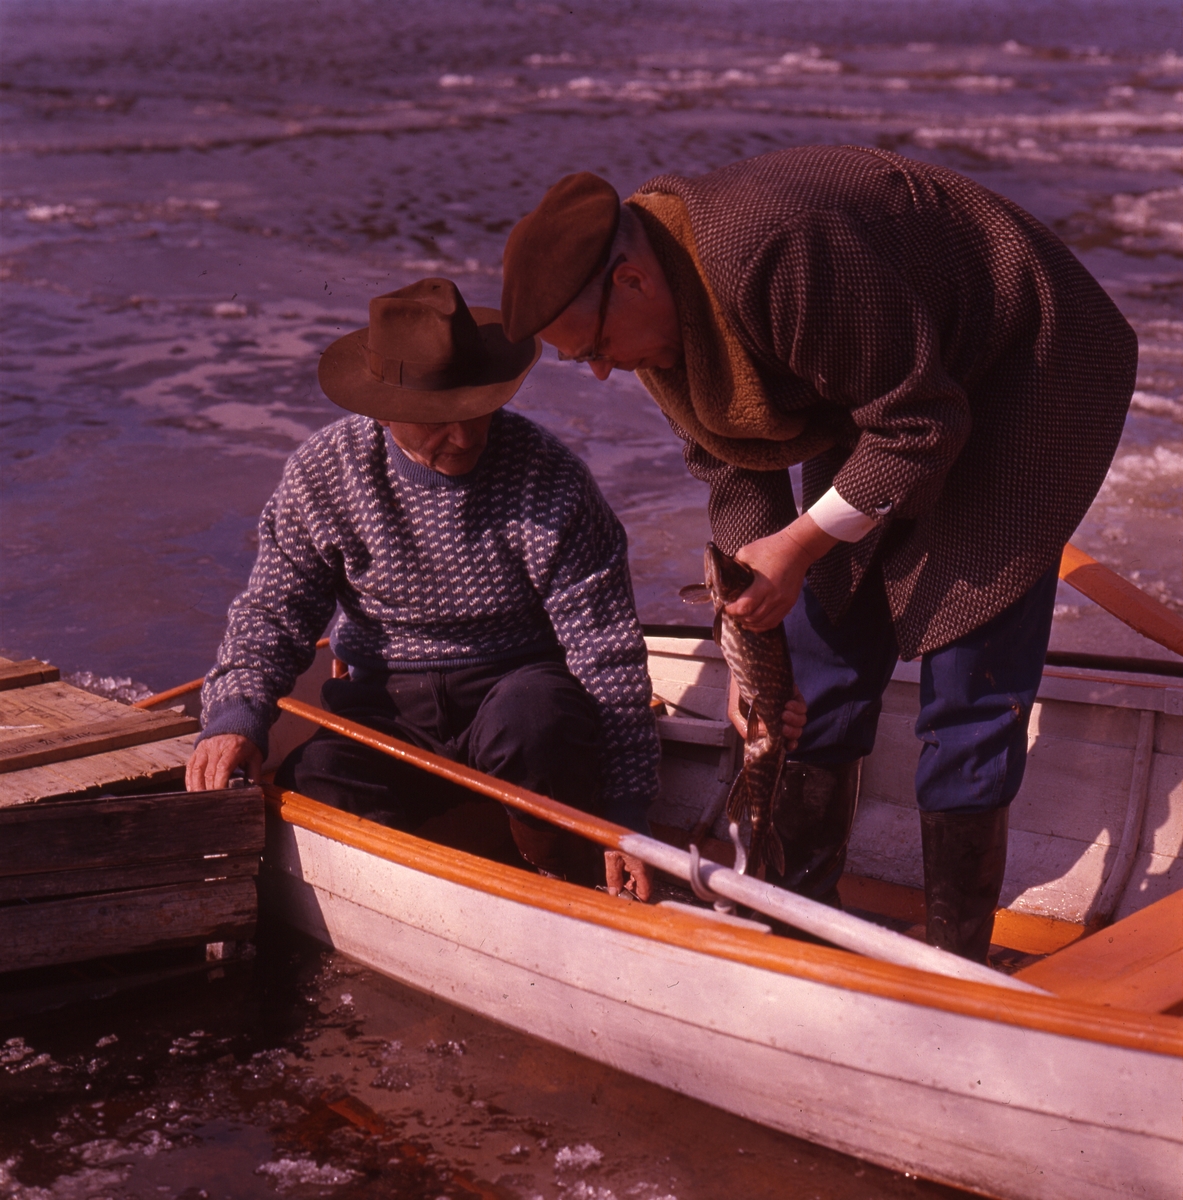 Författaren Albert Viksten (i hatt) och en annan man i en eka. Den andre mannen håller i en fisk. Issörja flyter på vattnet.